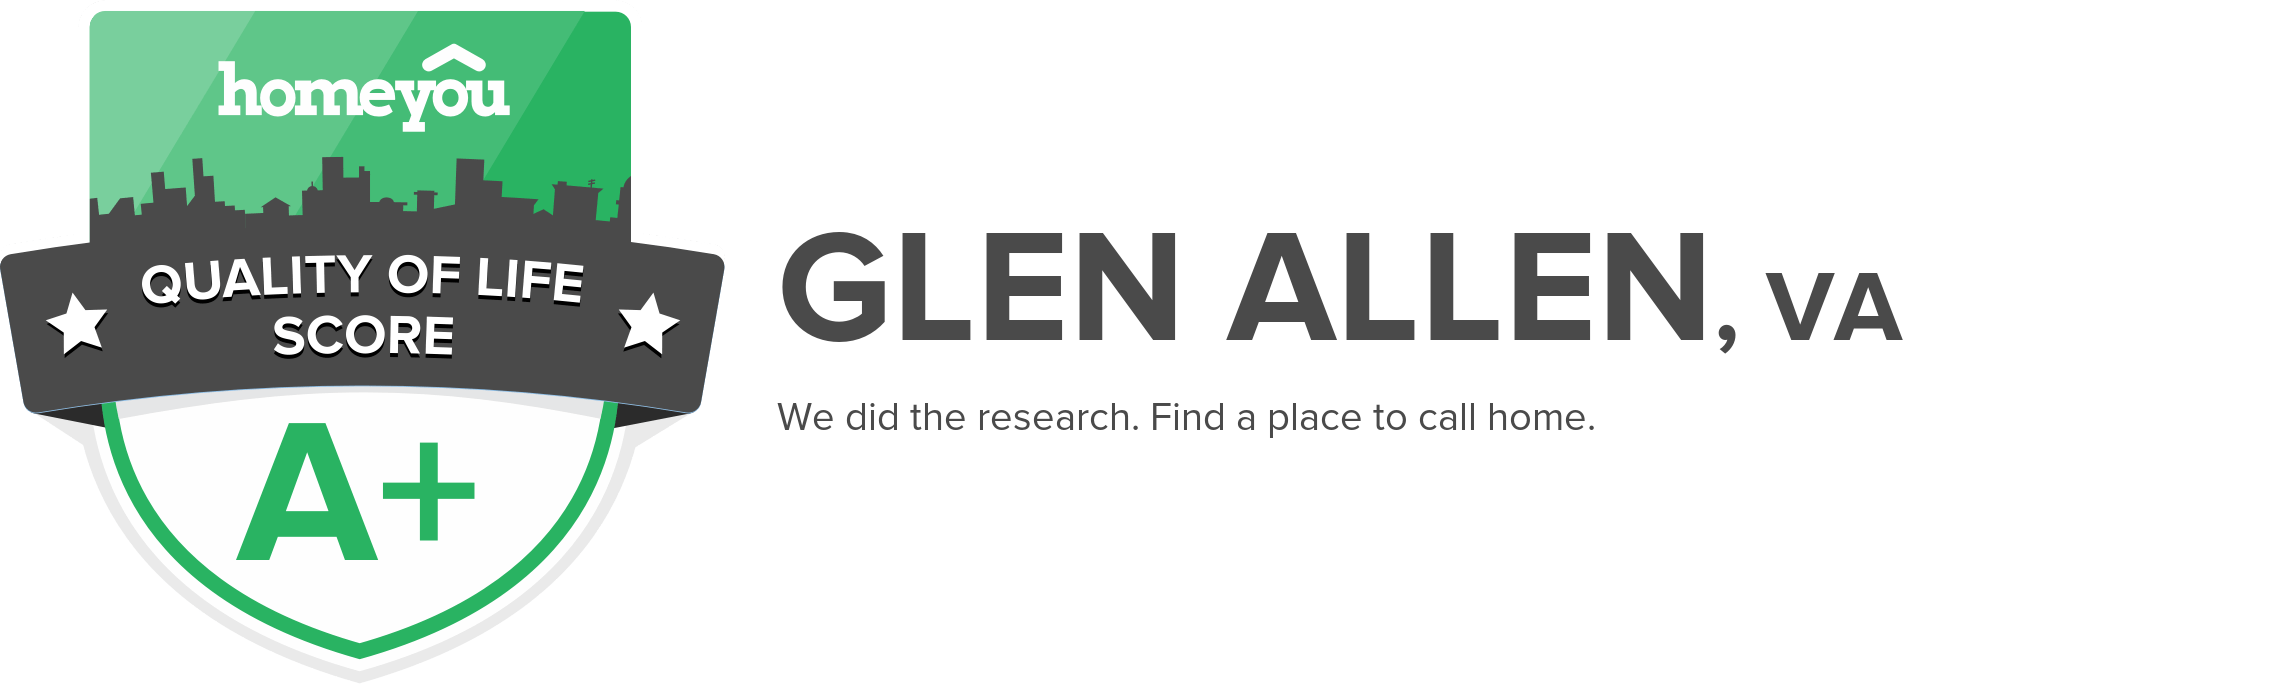 Glen Allen, VA